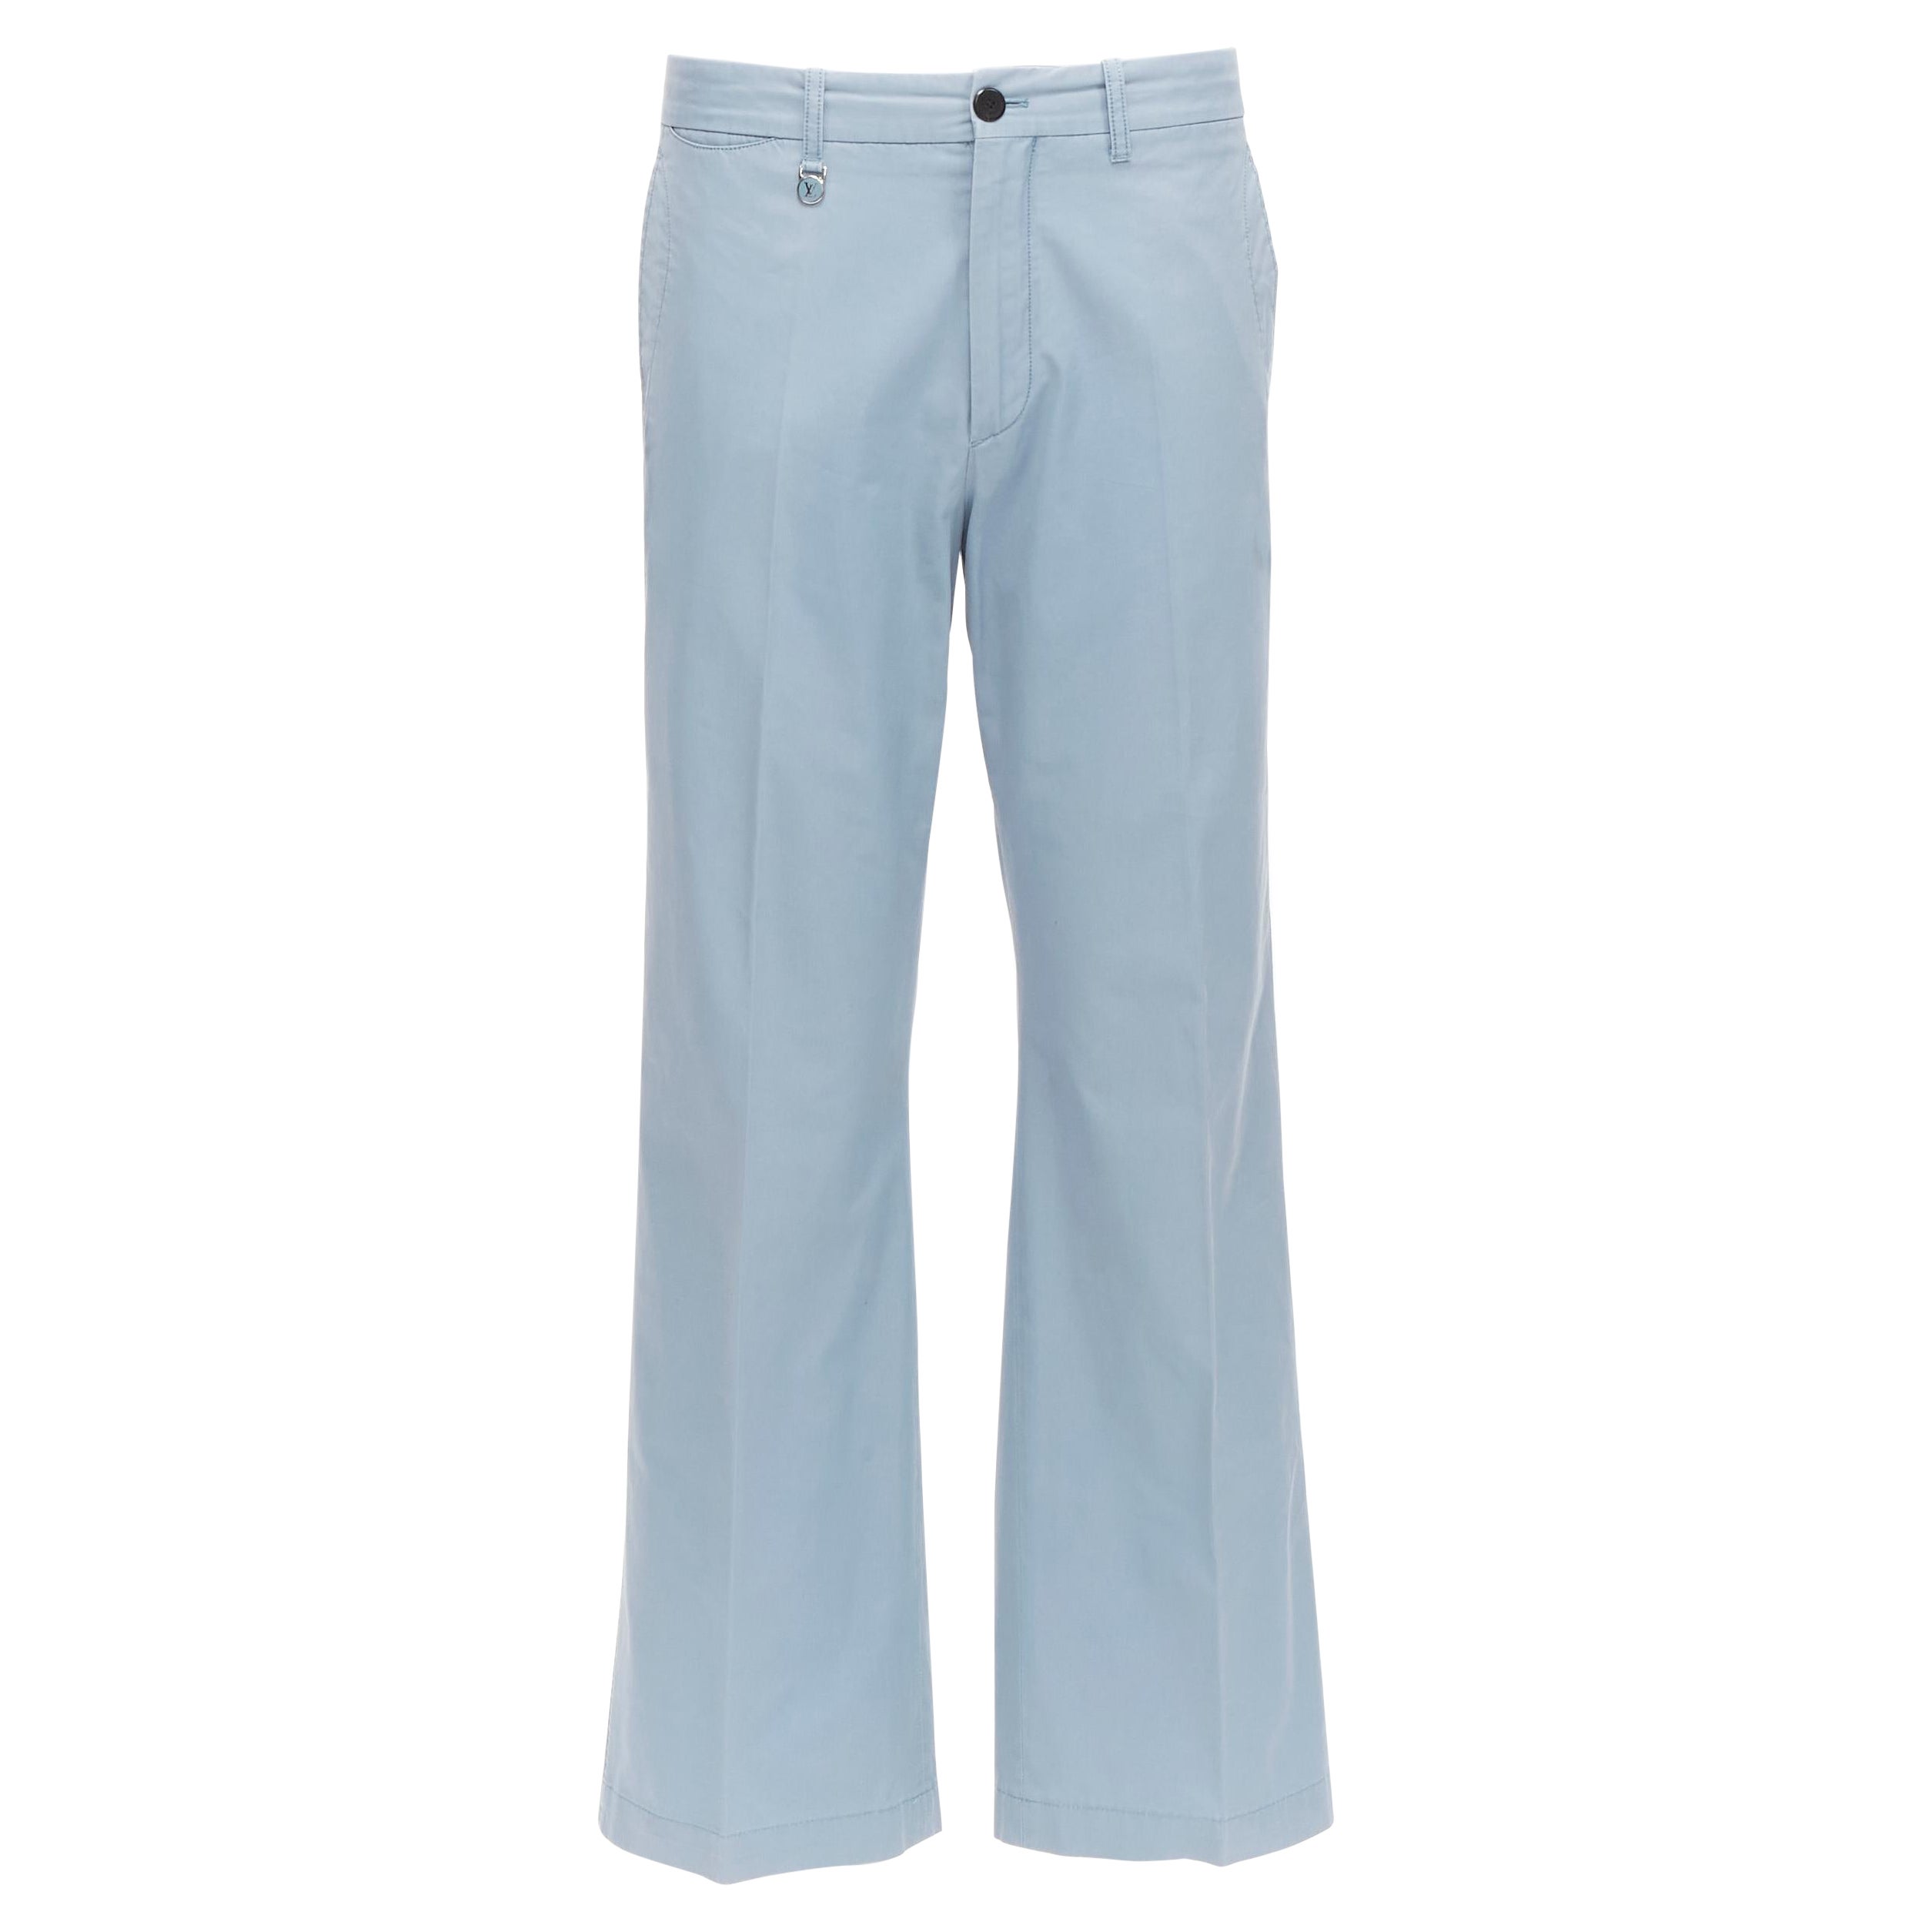 Louis Vuitton - Pantalon évasé bleu clair à poches et surpiqûres avec logo LV, taille EU 42